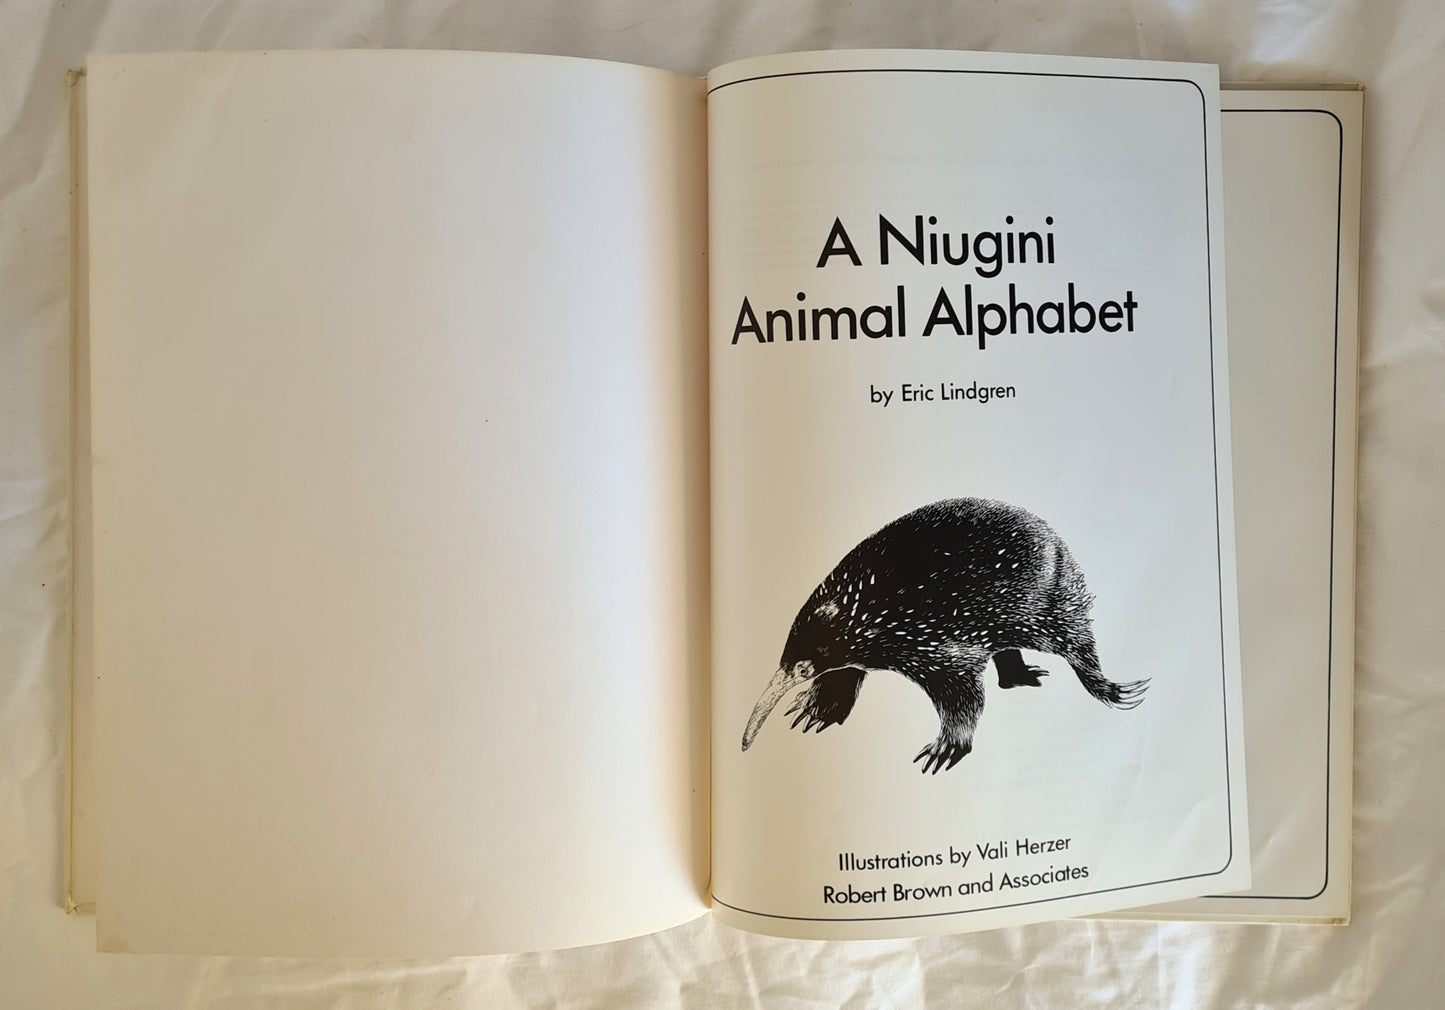 A Niugini Animal Alphabet by Eric Lindgren